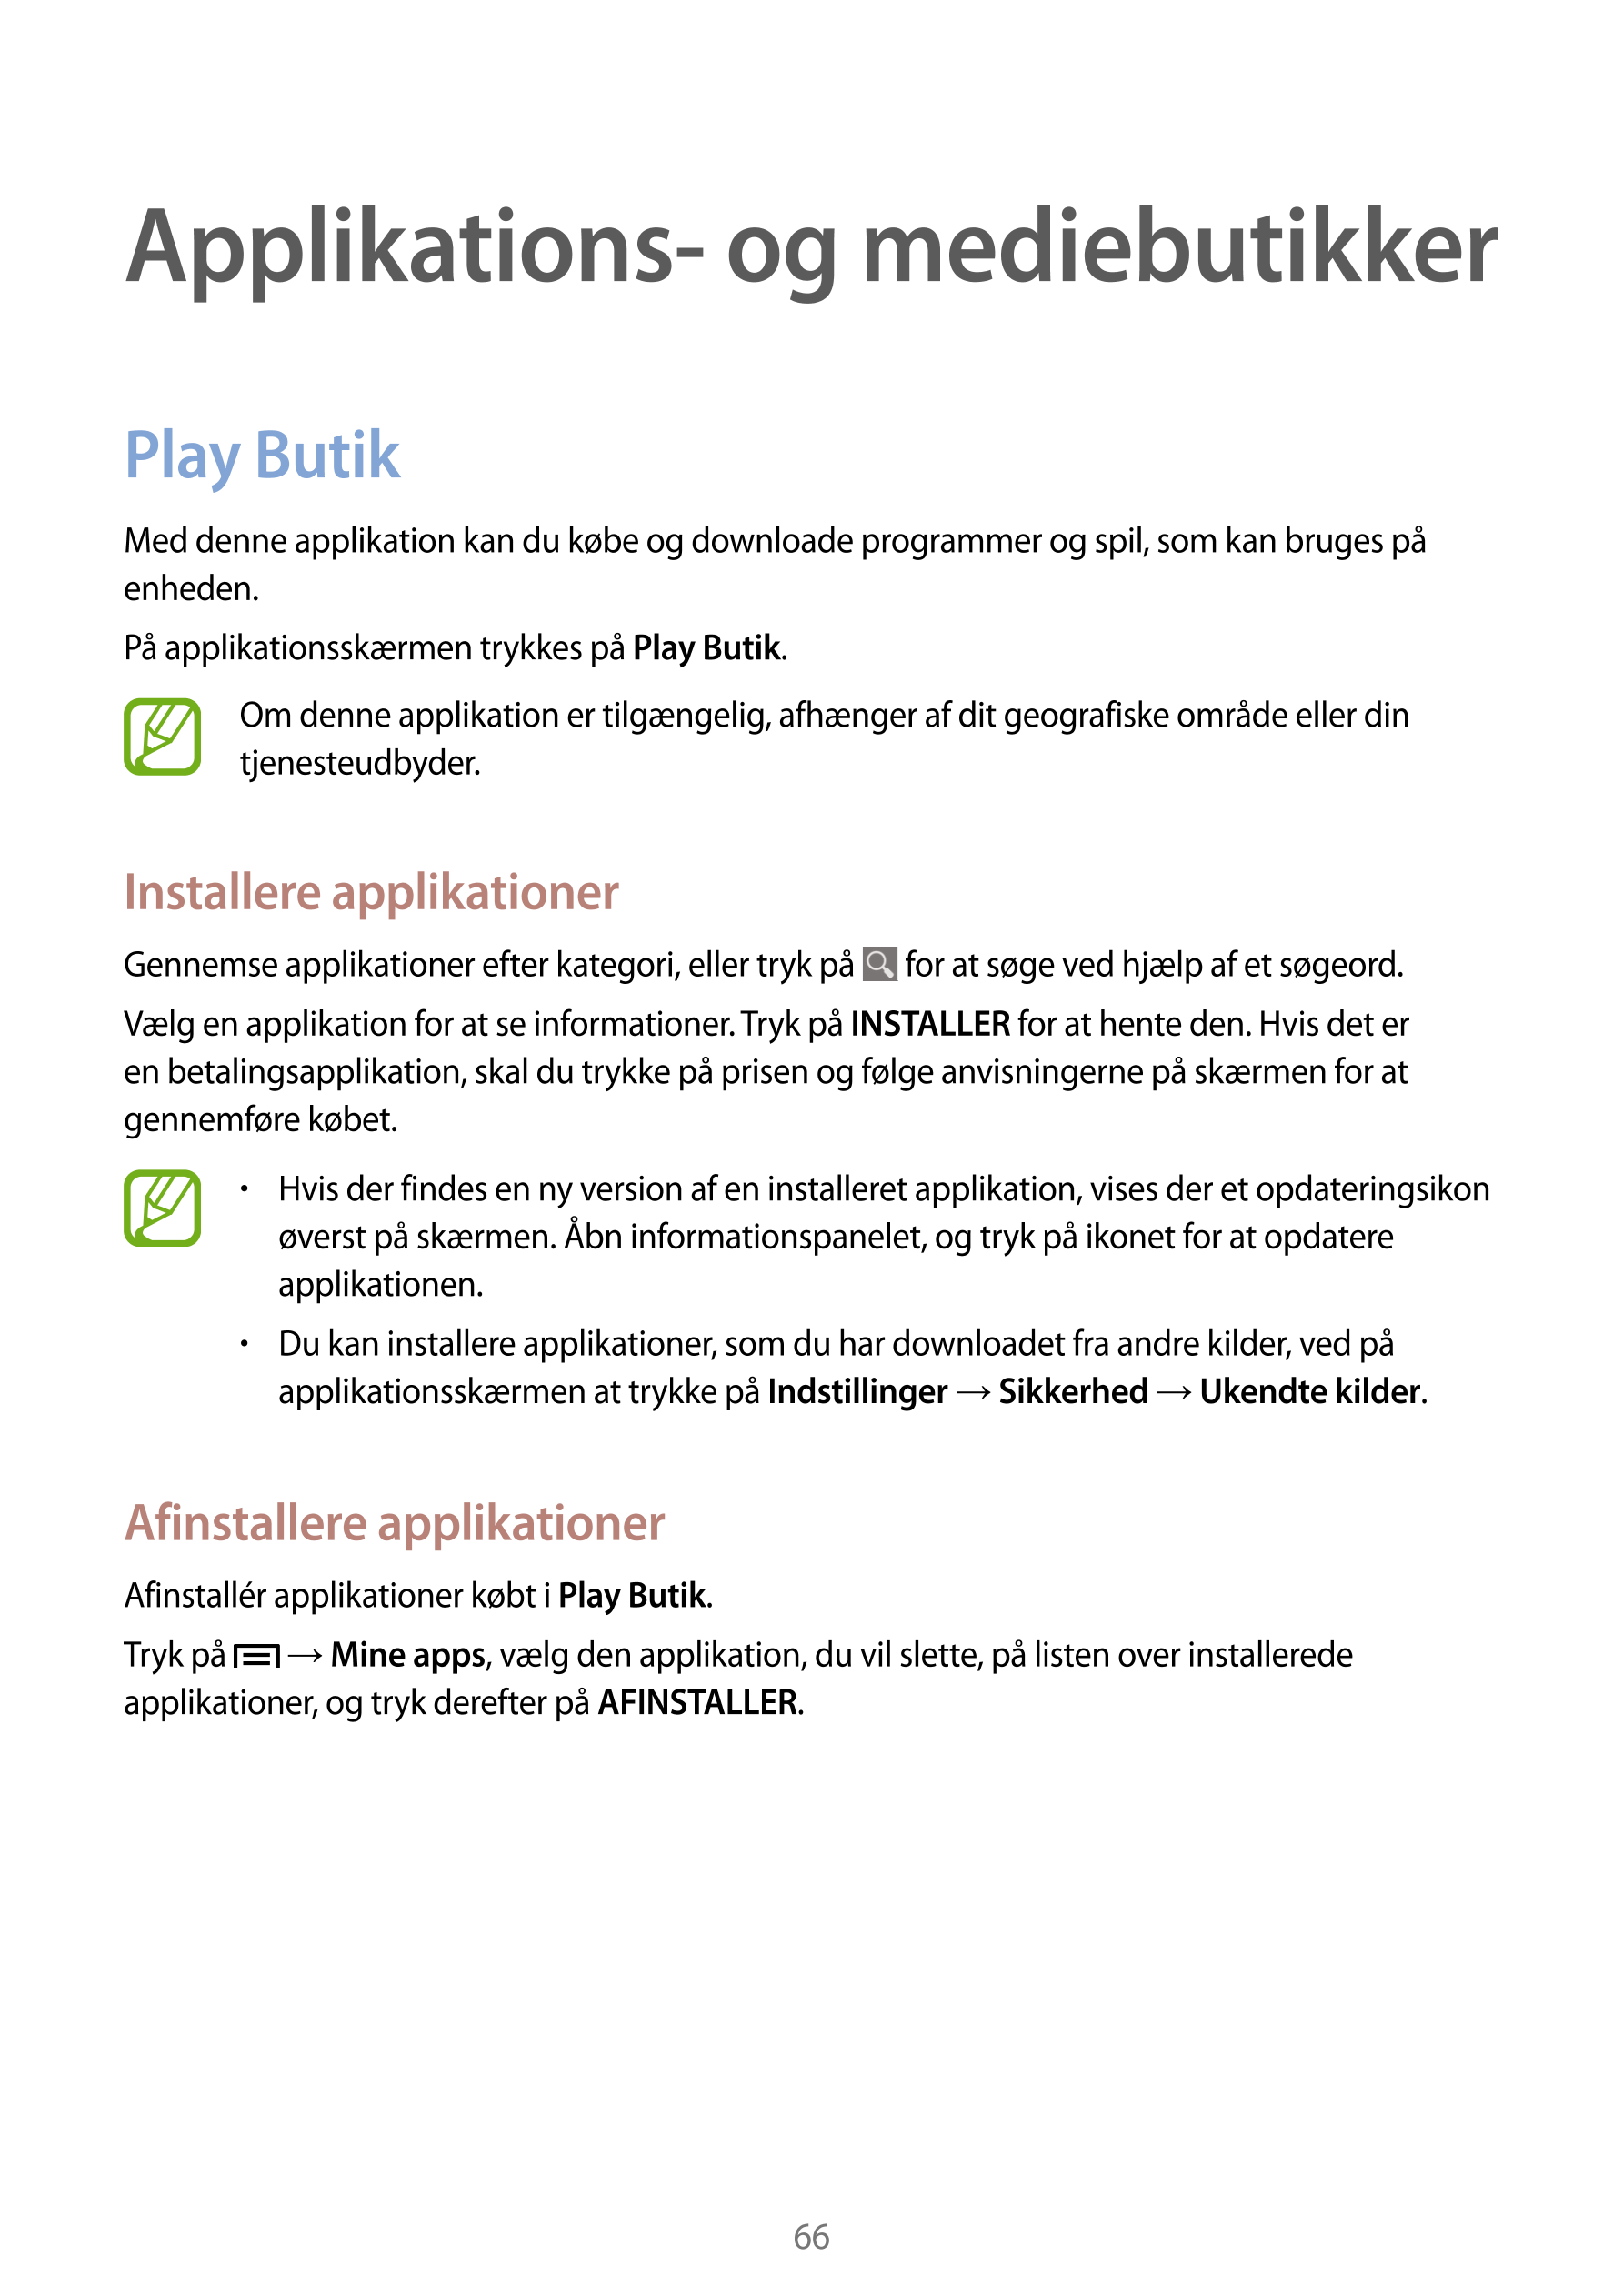 Applikations- og mediebutikker
Play Butik
Med denne applikation kan du købe og downloade programmer og spil, som kan bruges på 
